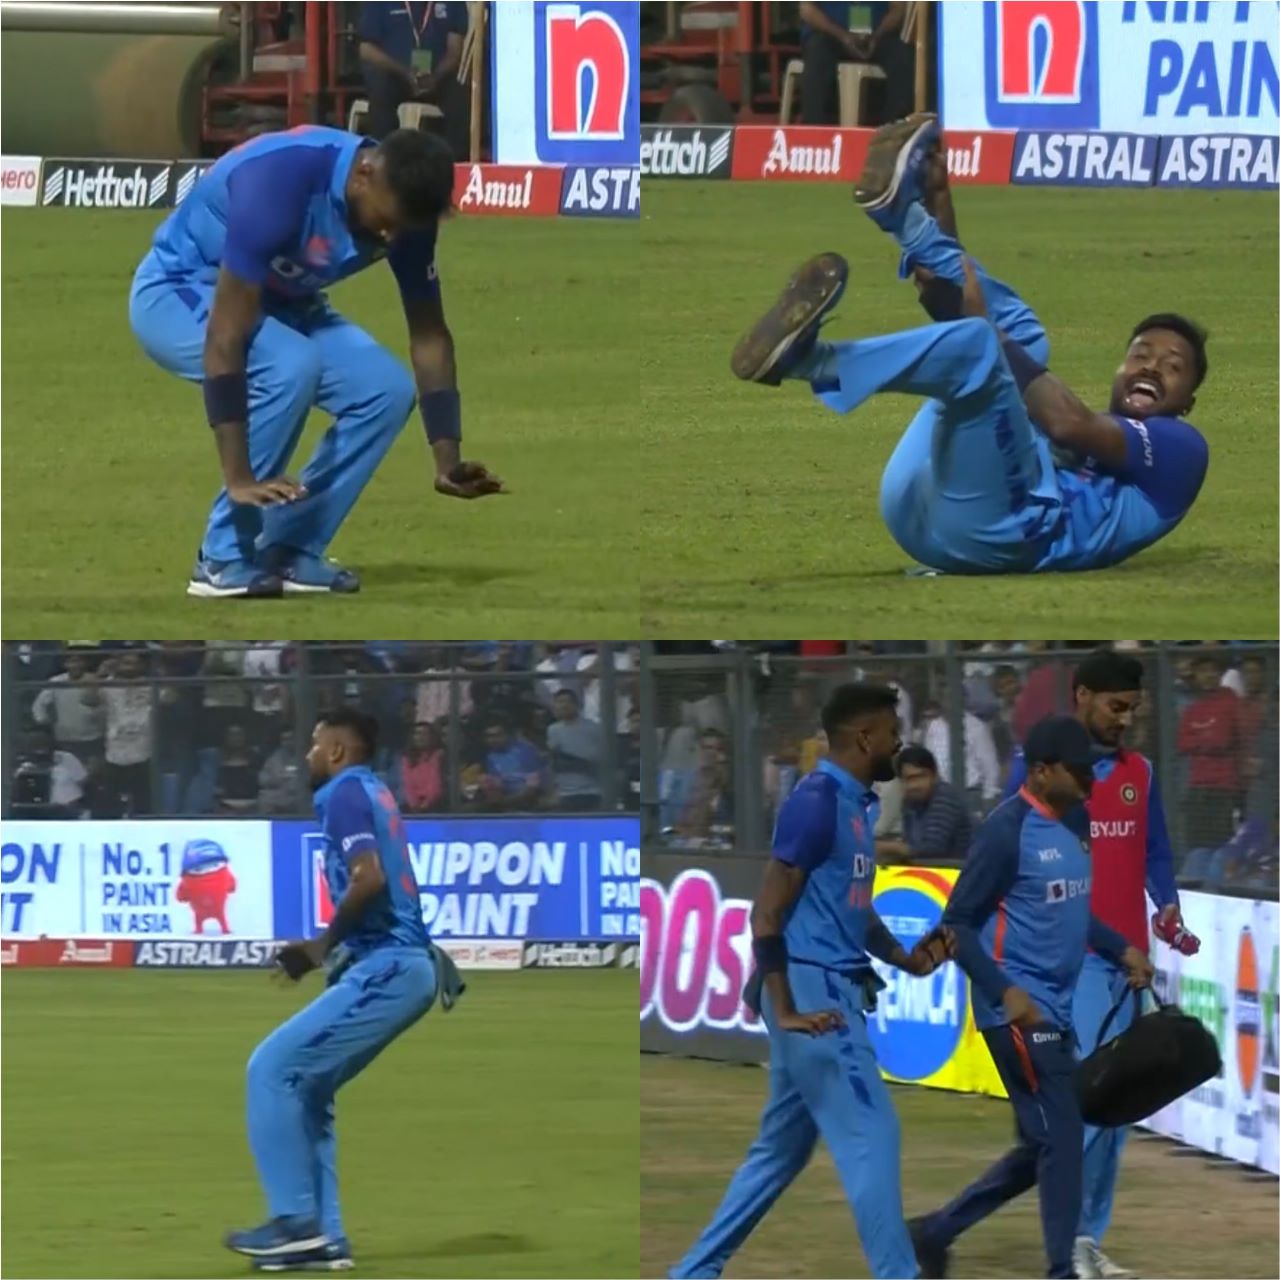 IND vs SL, India vs SriLanka, IND vs SL 1st T20, Hardik Pandya injury, Hardik Pandya captain, IND vs SL T20, IND vs SL LIVE, Hardik Pandya back injury